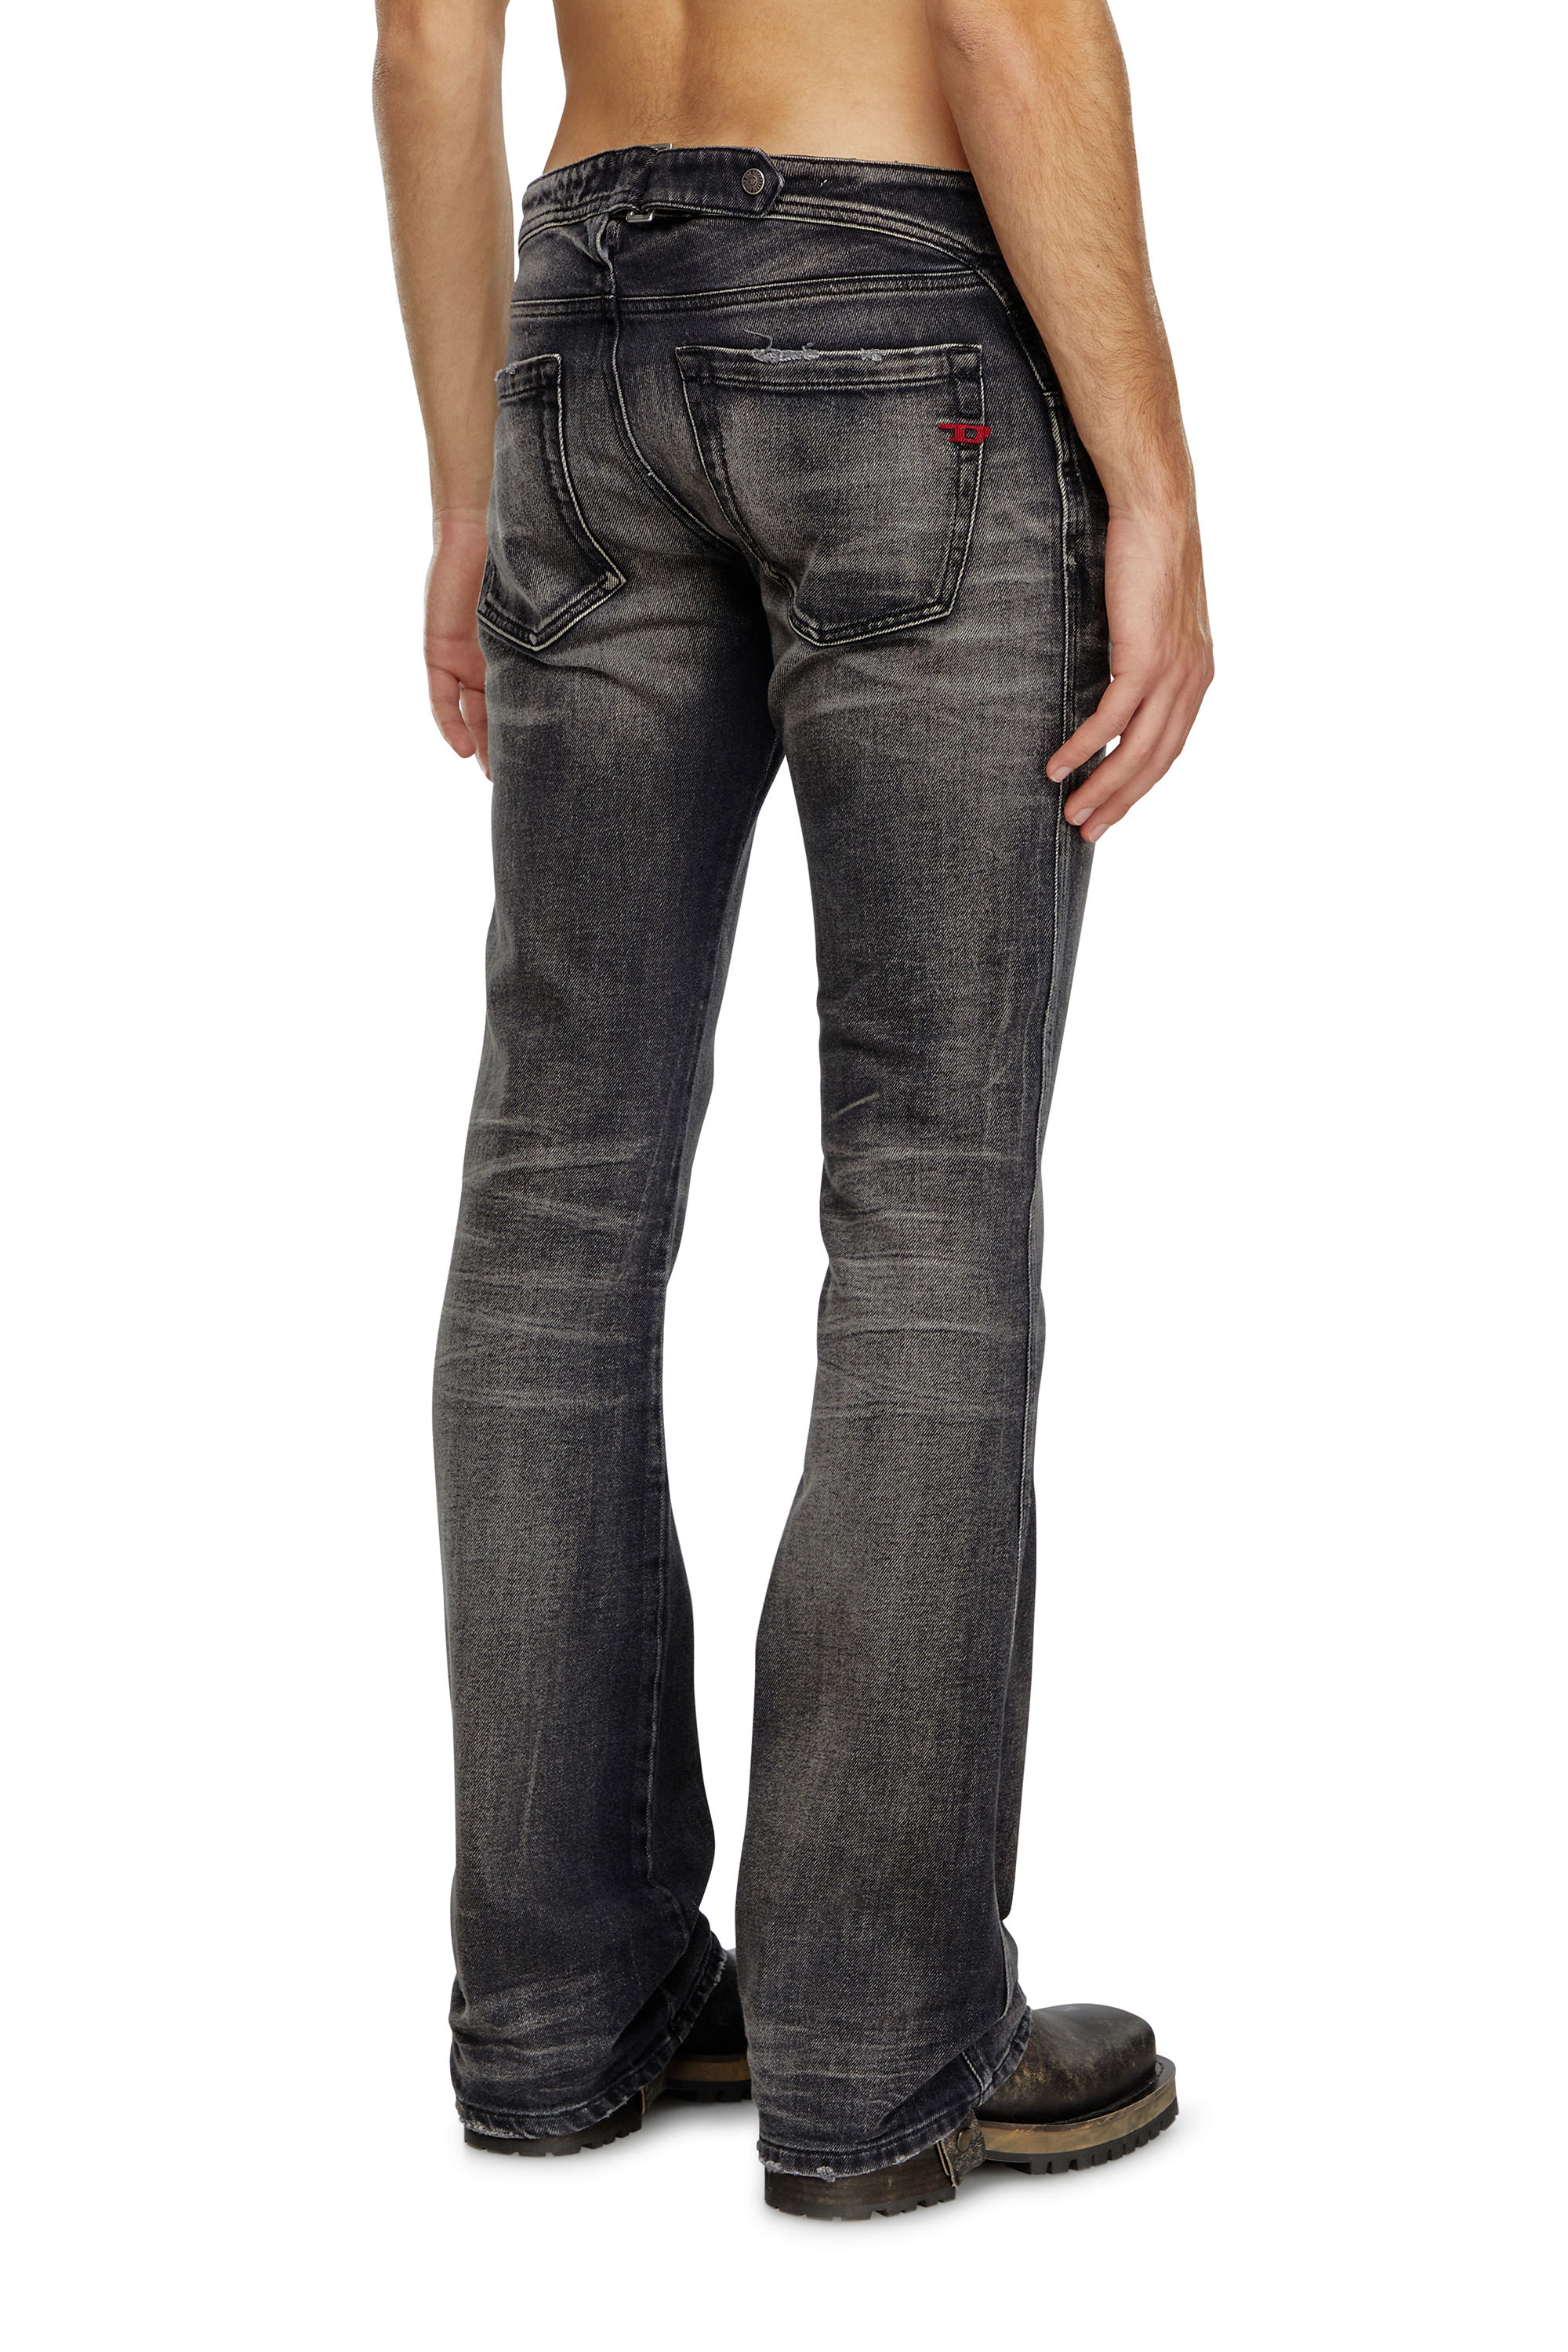 Diesel - Bootcut Jeans D-Backler 09J65, Hombre Bootcut Jeans - D-Backler in Negro - Image 4